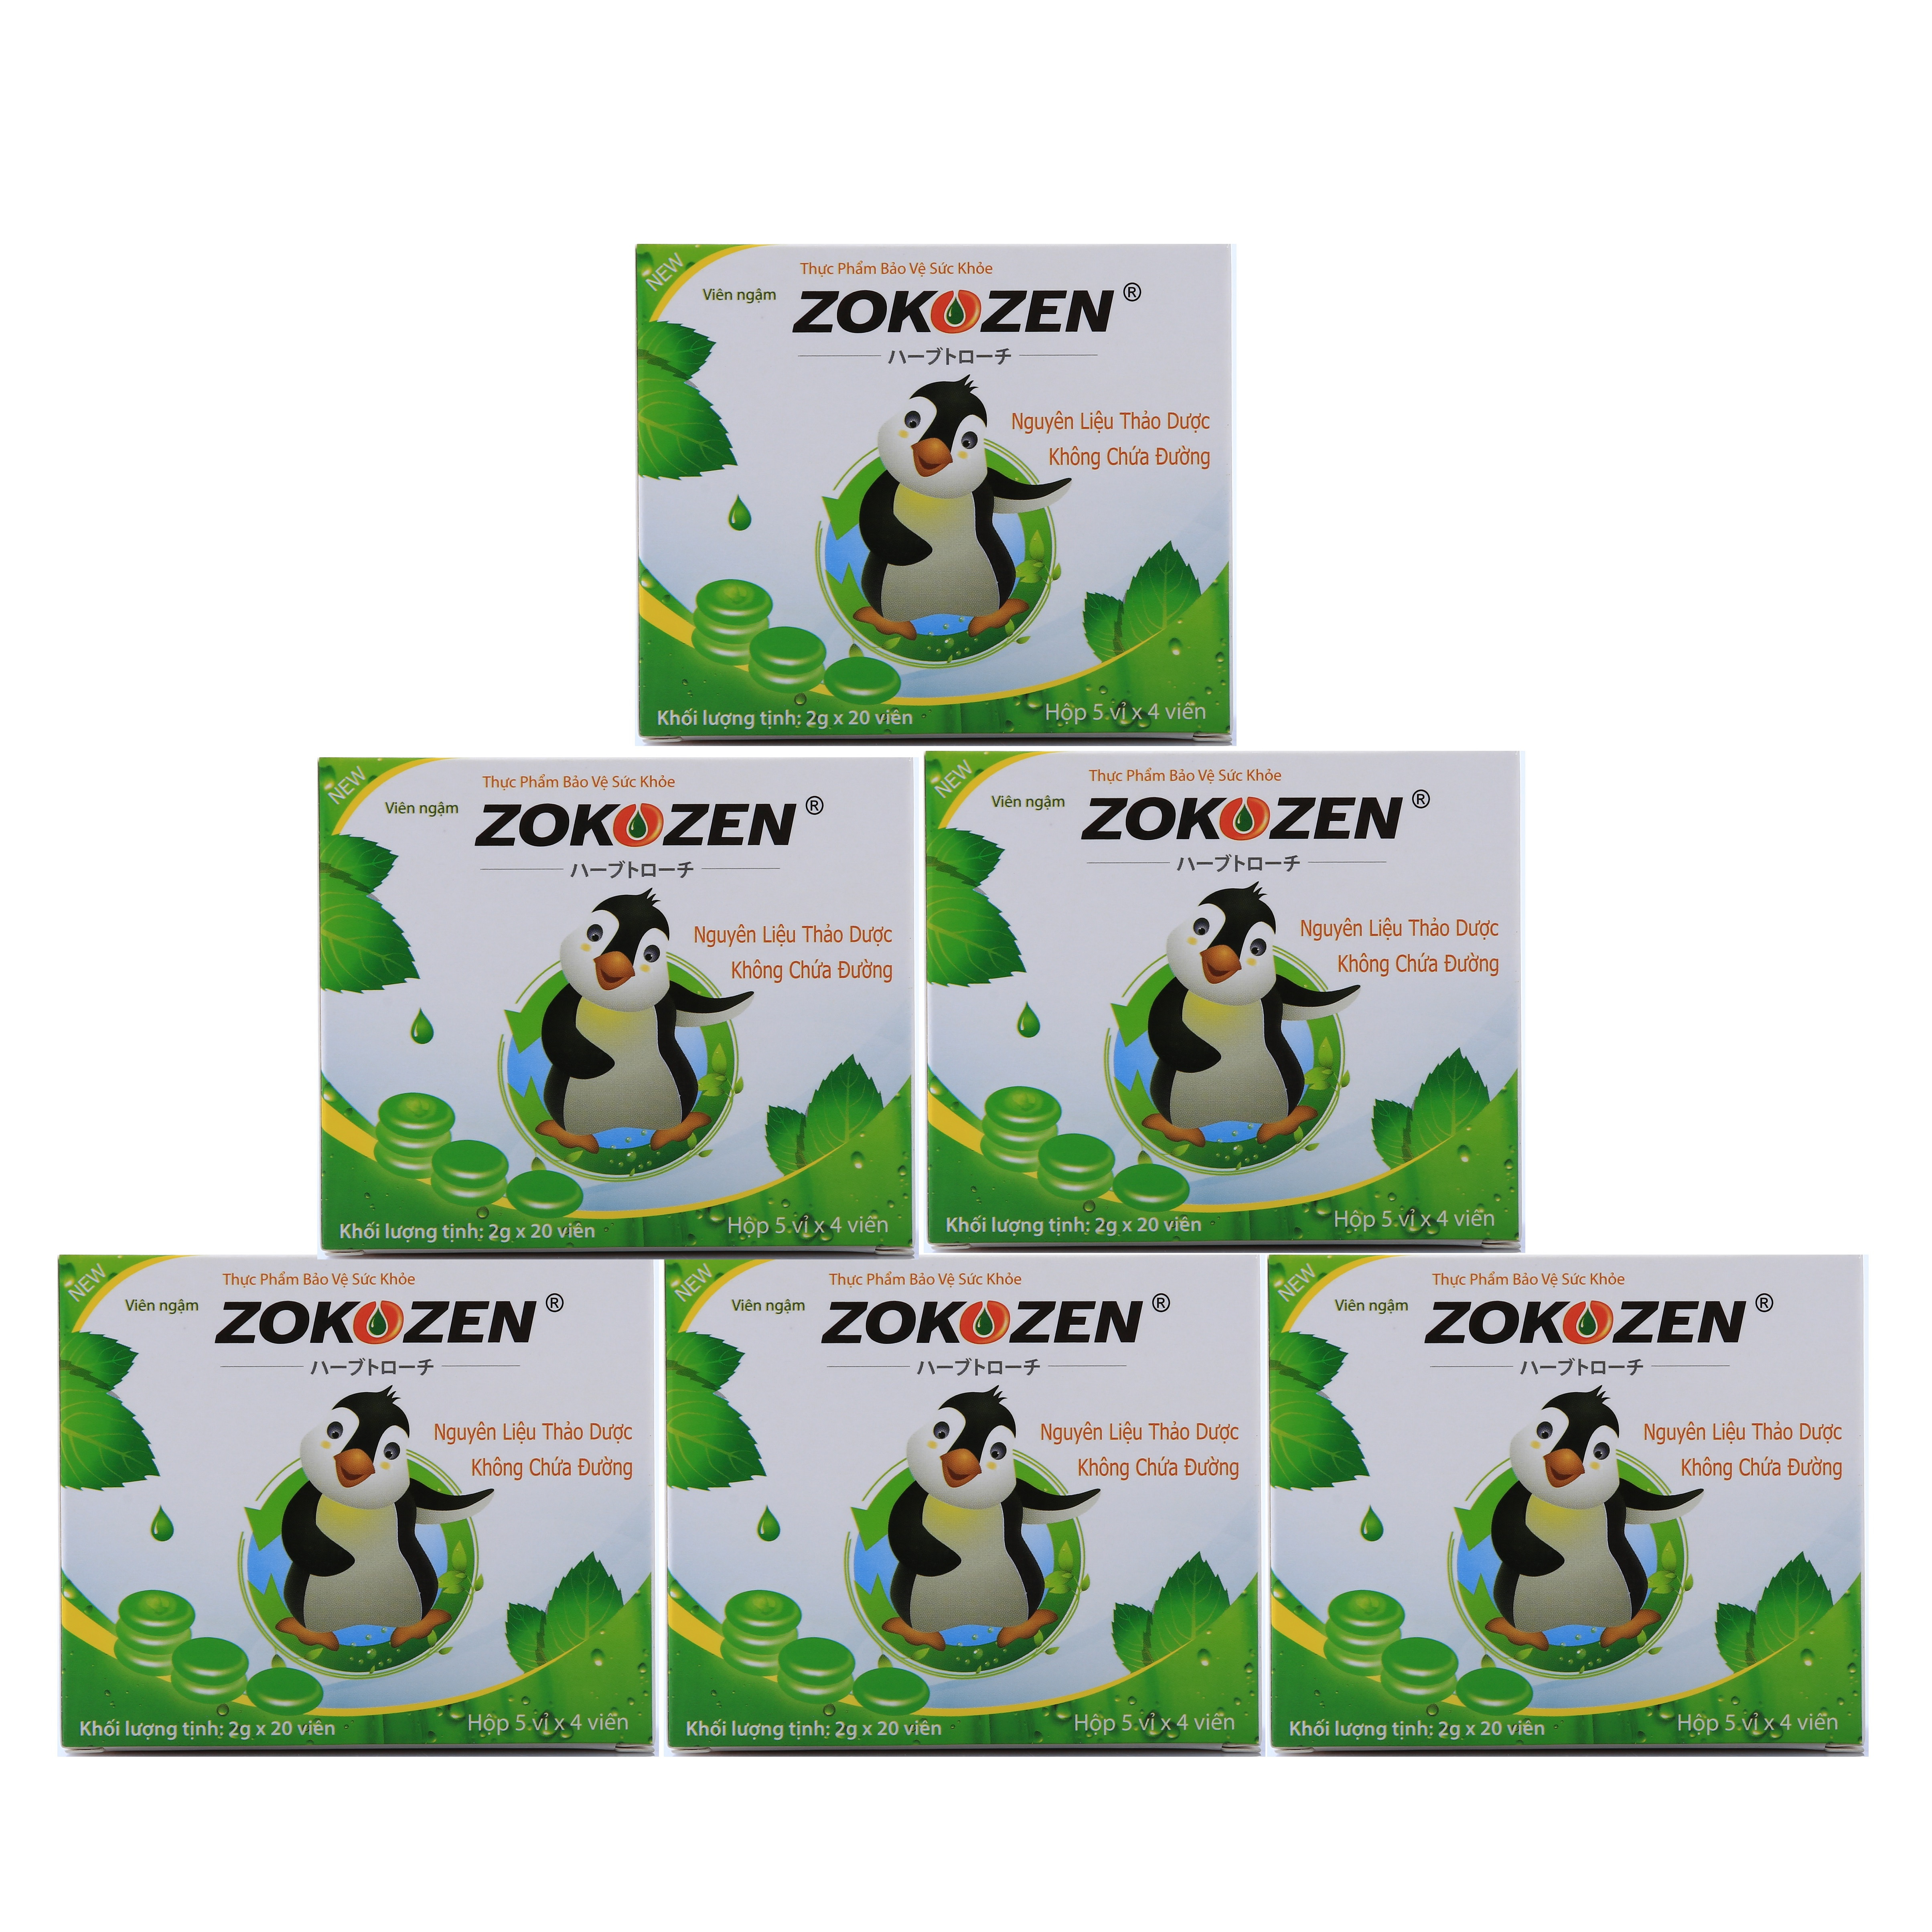 Combo 6 hộp Thực phẩm bảo vệ sức khỏe Thảo dược trị ho Viên Ngậm Zokozen (Hộp 5 Vỉ/4 Viên)